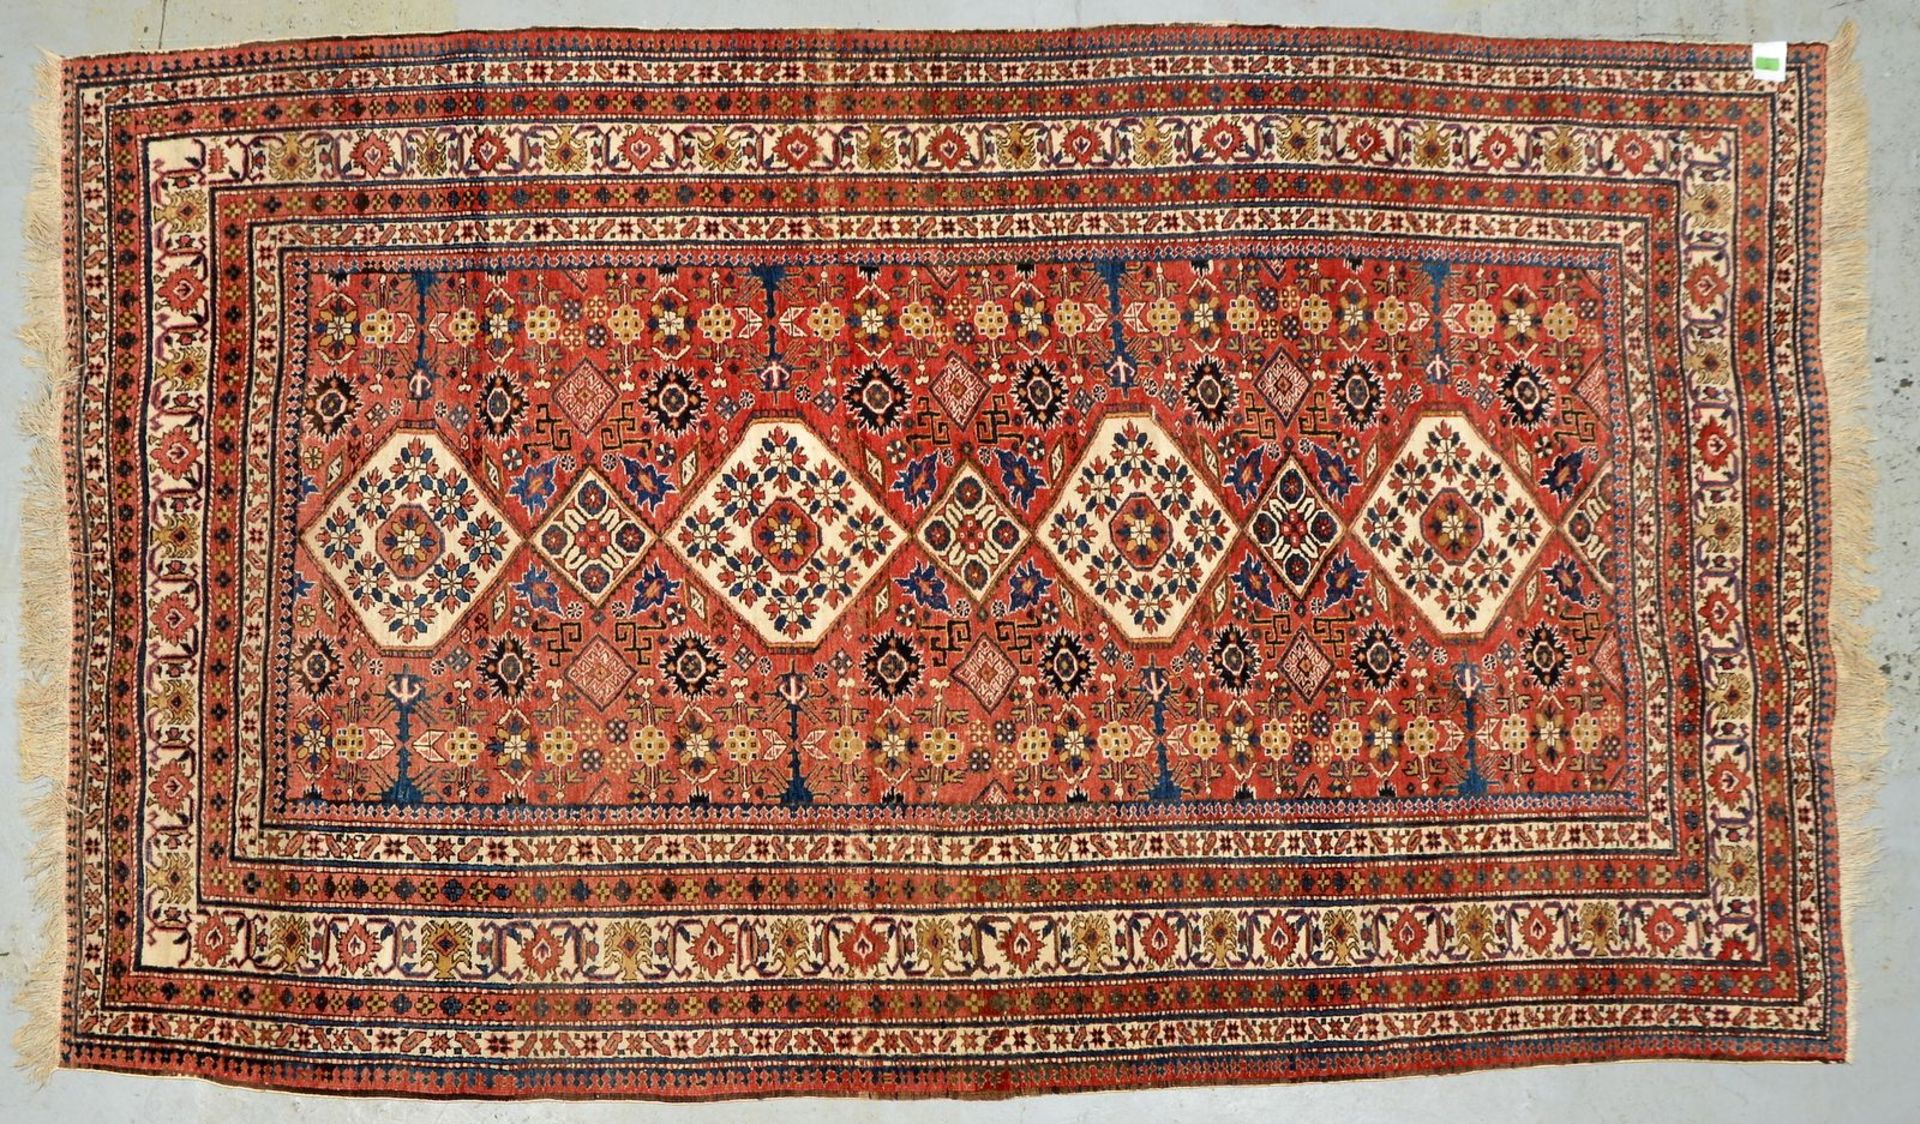 Orientteppich, gleichm&auml;&szlig;iger Flor - in gutem Zustand; Ma&szlig;e 273 x 162 cm (leicht aus